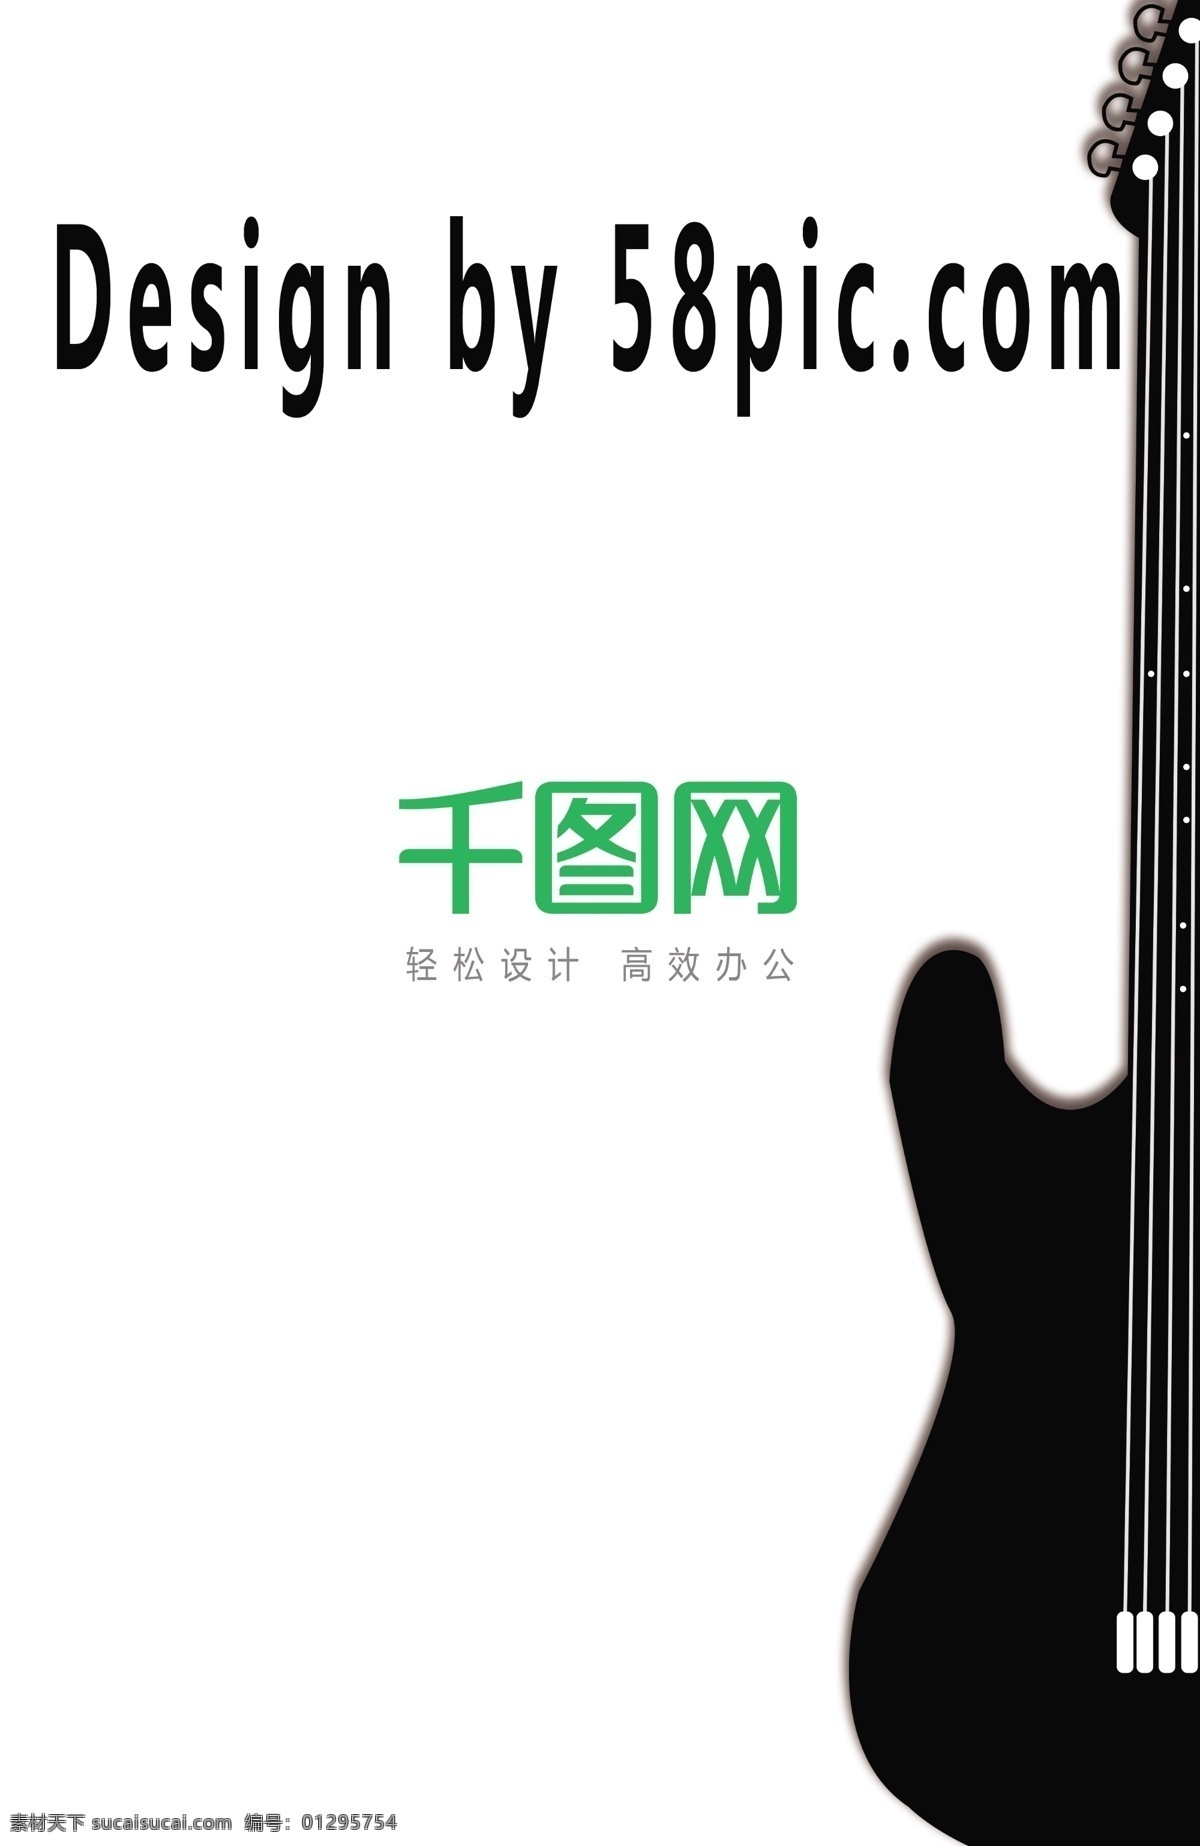 吉他 乐器 音乐 白色 背景 创意 名片 创意名片 简洁名片 电子琴 电吉他